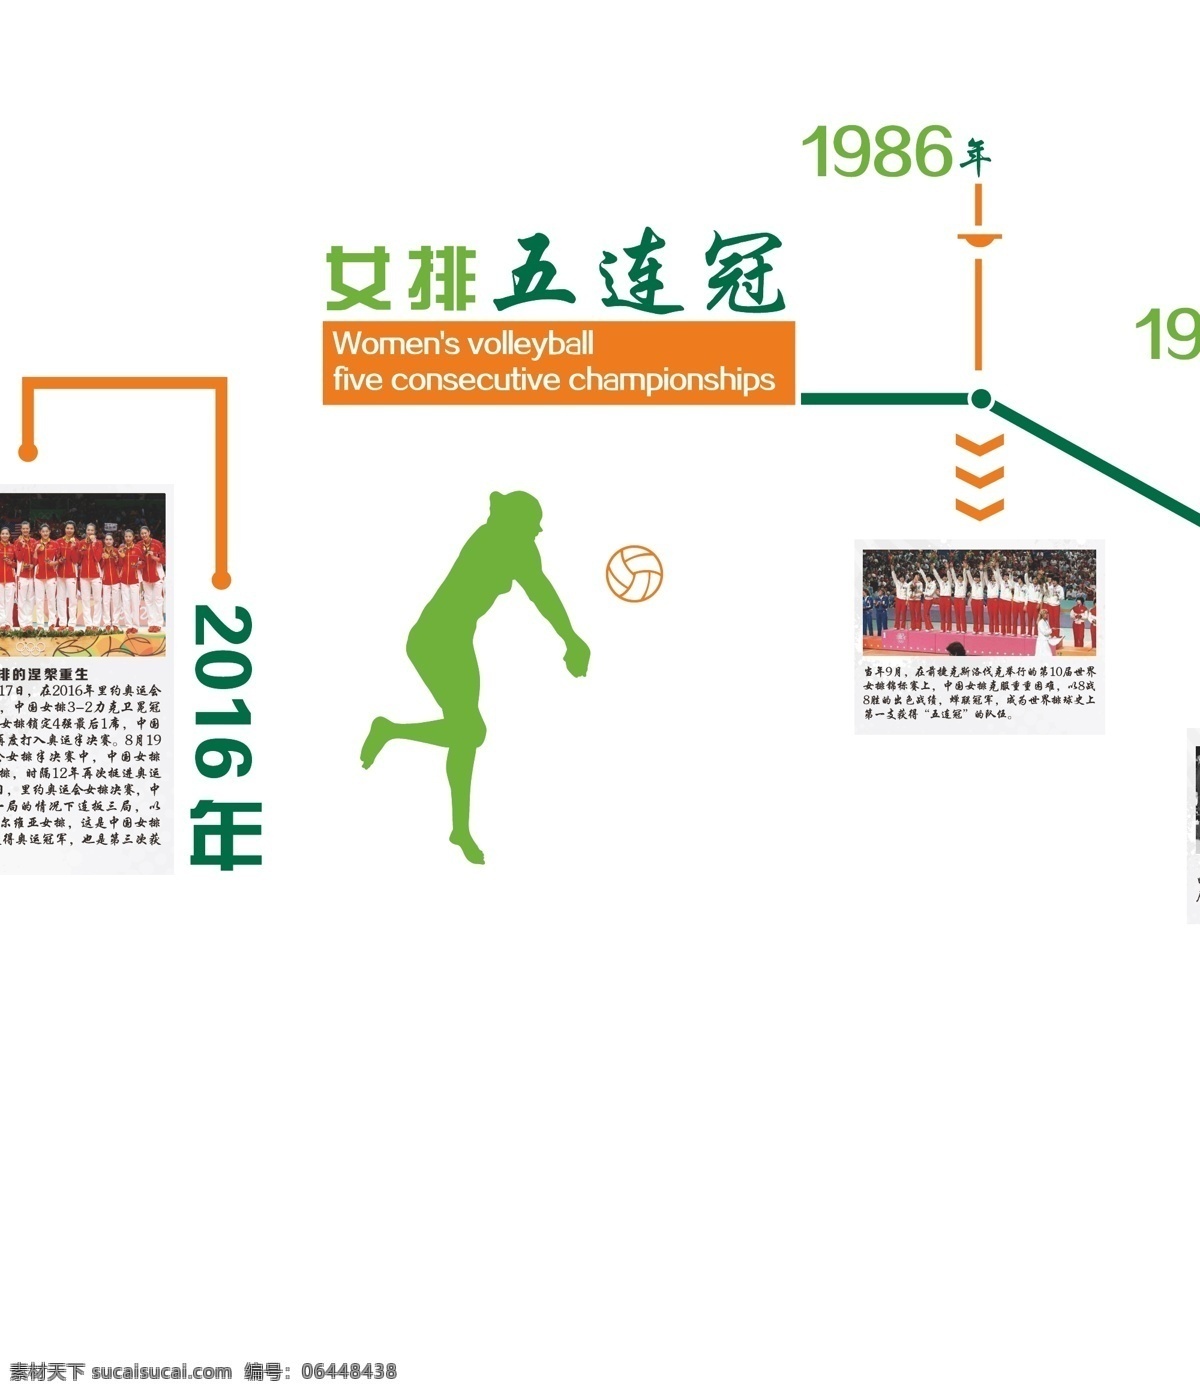 少年强 中国强 奥运精神 女排精神 校园文化 少年强中国强 奥运项目图标 室内广告设计